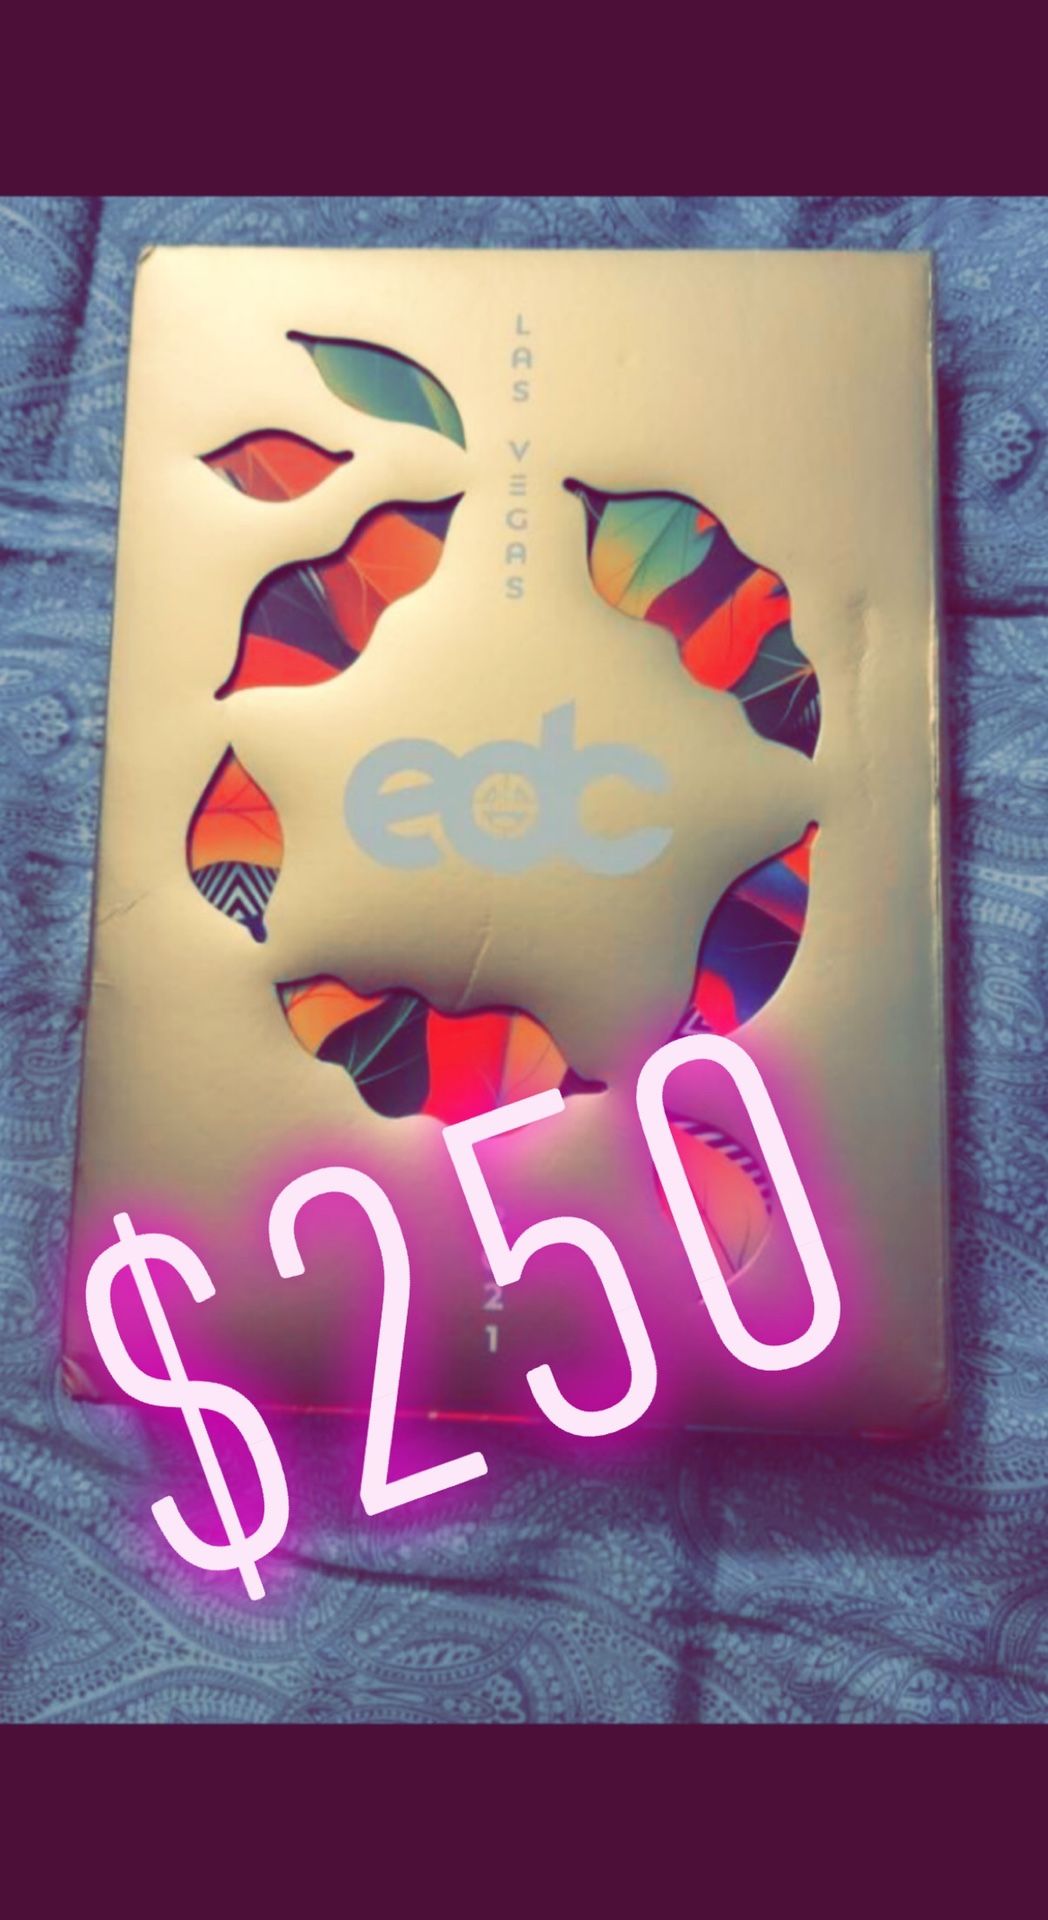 Edc Ticket 250$$$ Let’s Go!! 